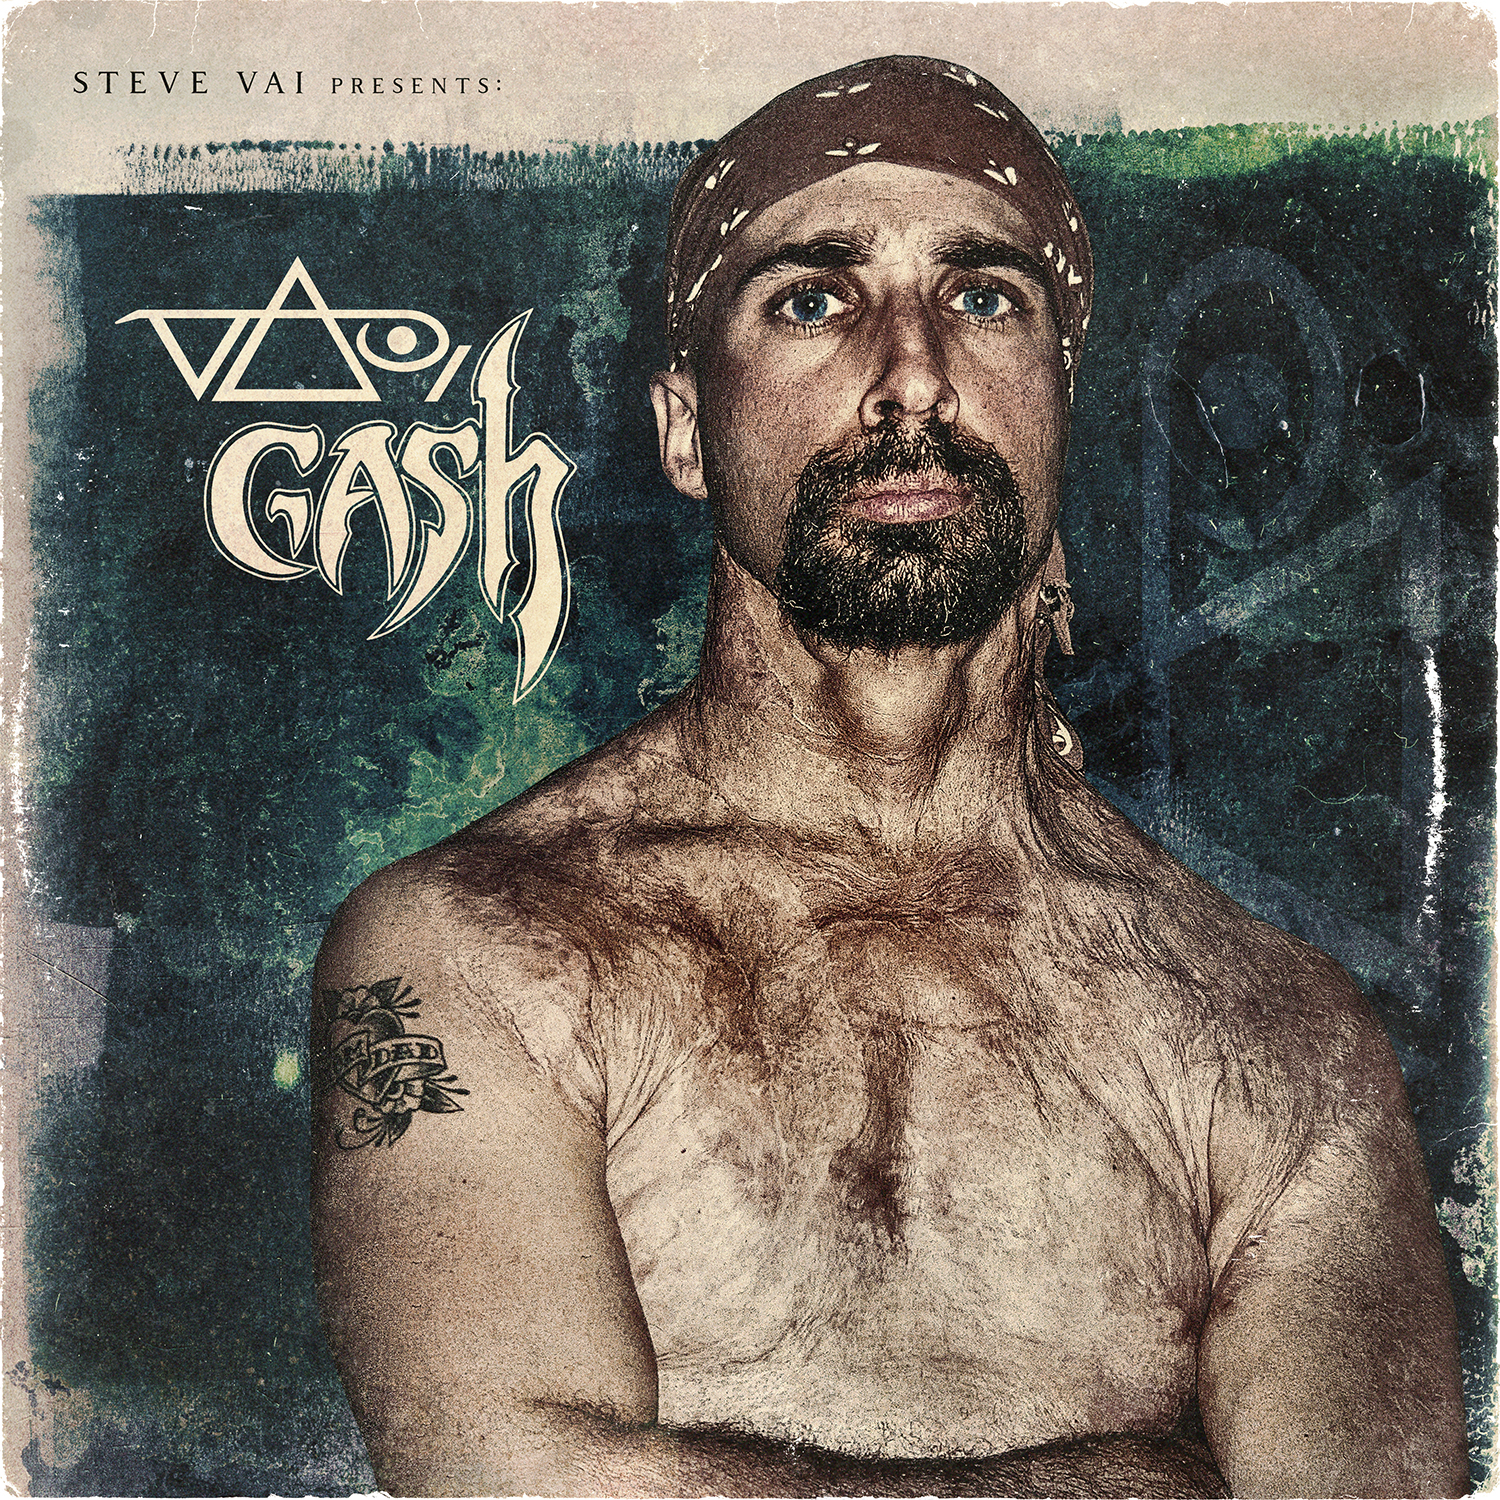 Steve Vai/Gash (USA) – Vai/Gash